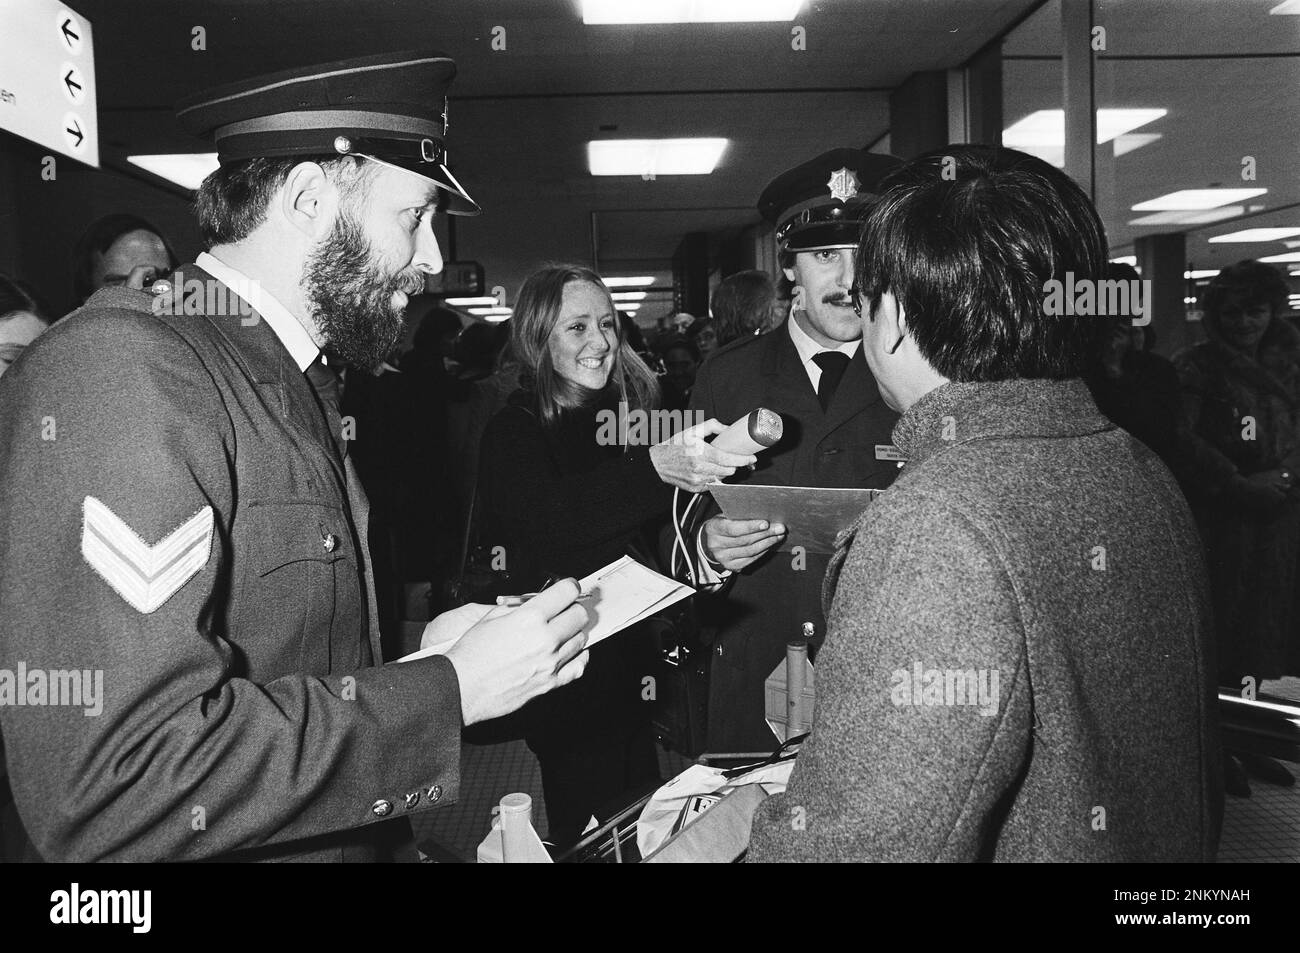 Pays-Bas Histoire: Les homosexuels déguisés en officier de police interrogent les Américains à Schiphol (en raison de la réglementation aux États-Unis) ca. 10 janvier 1980 Banque D'Images